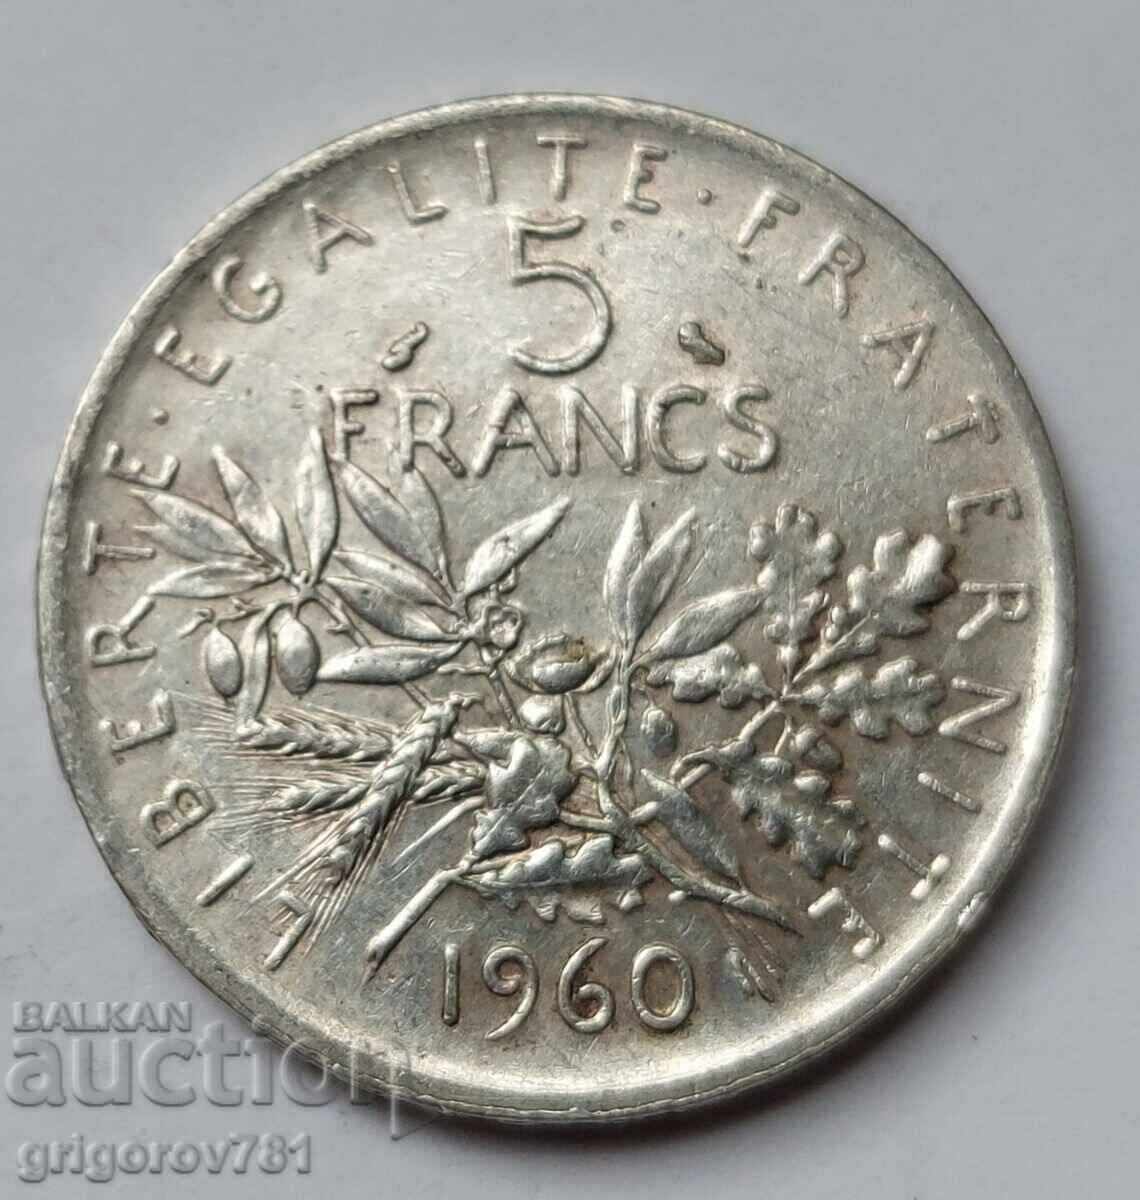 5 Franci Argint Franta 1960 - Moneda de argint #10